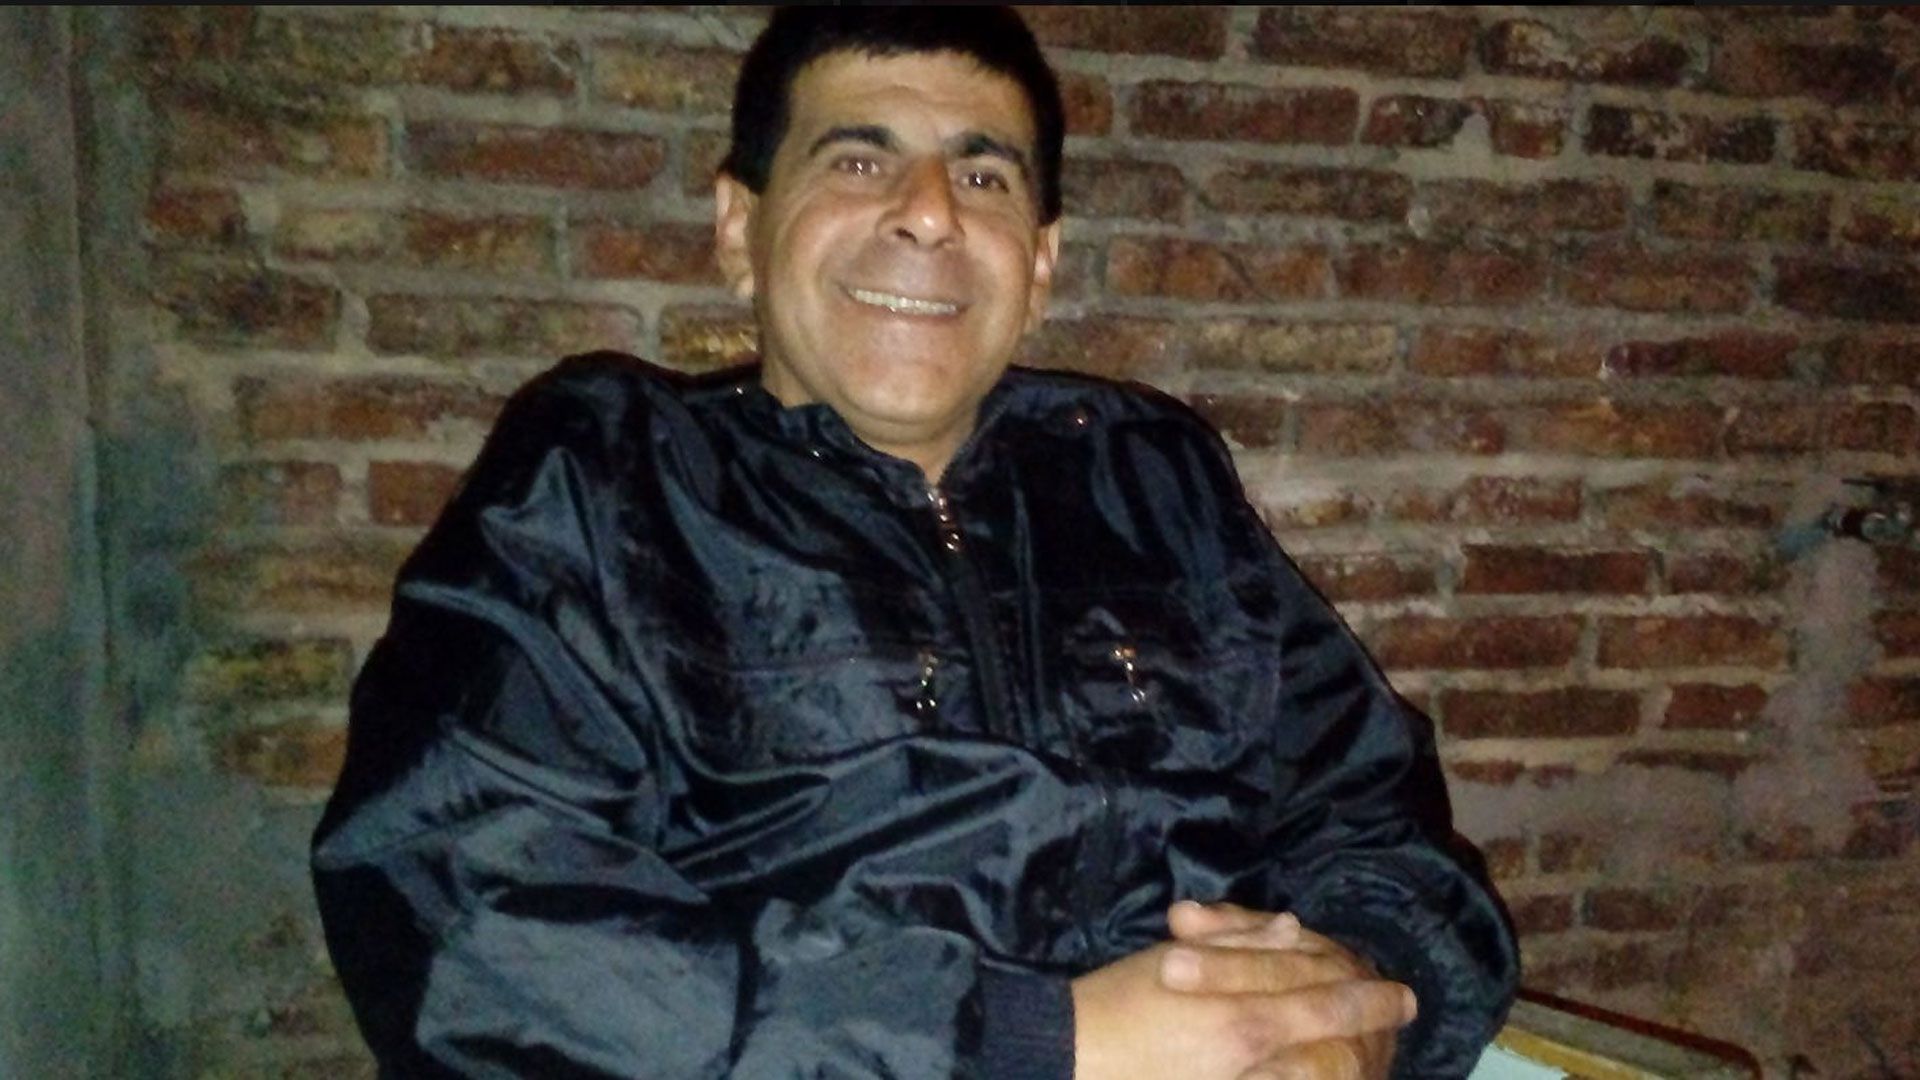 La víctima Marcelo Sifon tenía 49 años y fue asesinado al intentar recuperar el celular que le habían robado a su hija en la ciudad de Gualeguay en Entre Ríos